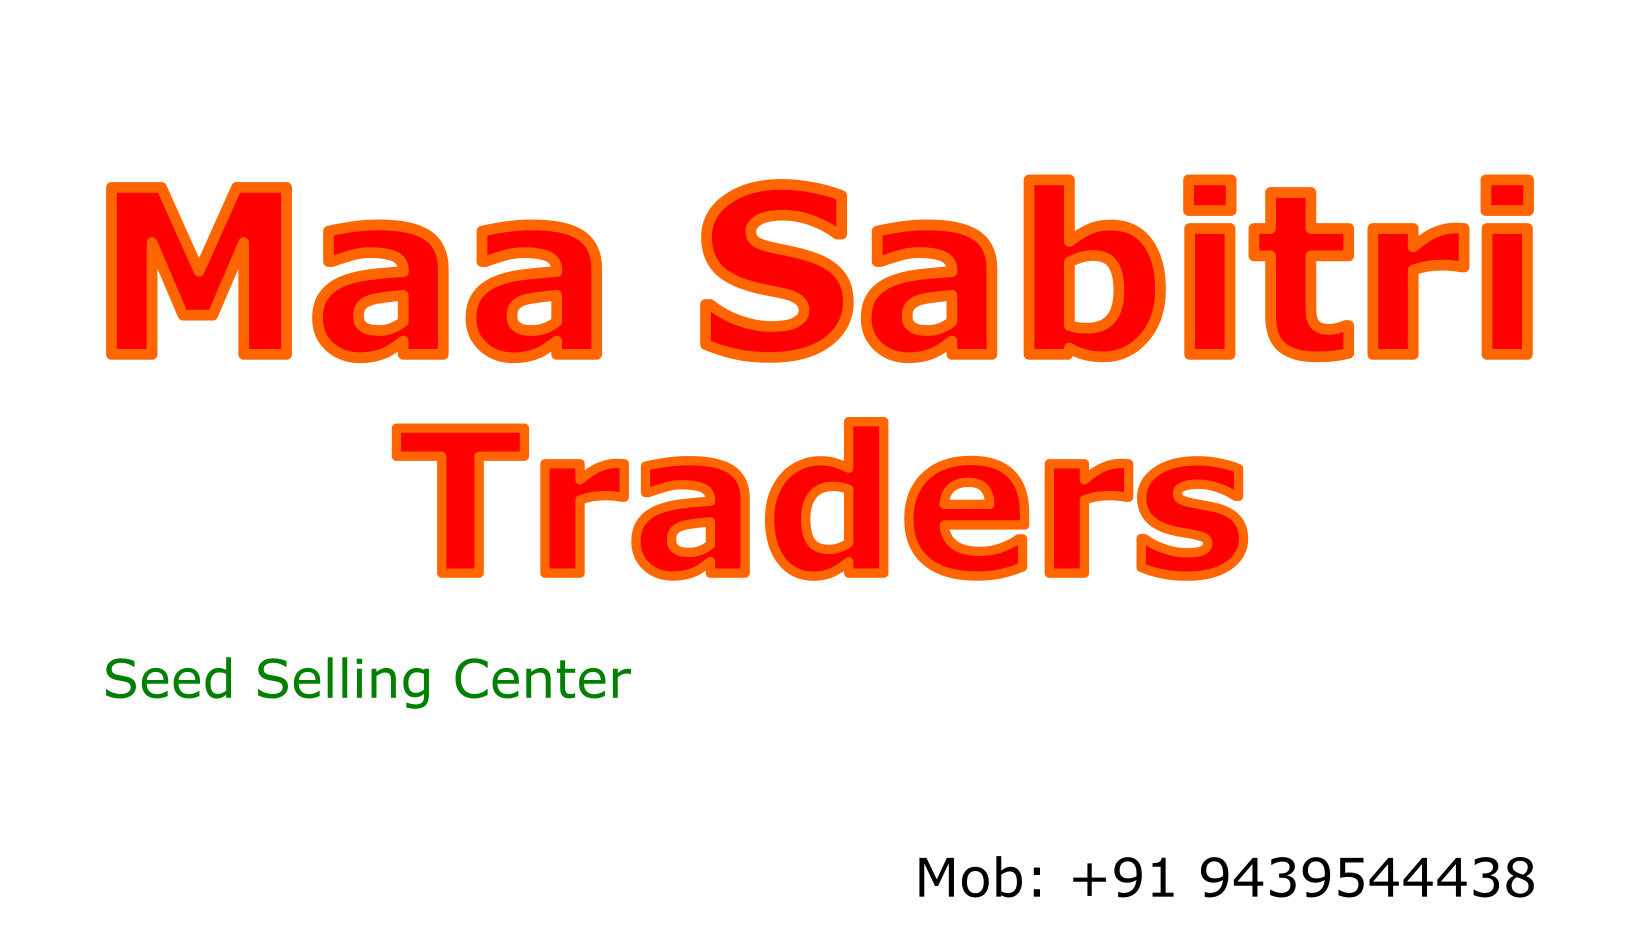 Maa Sabitri Trades